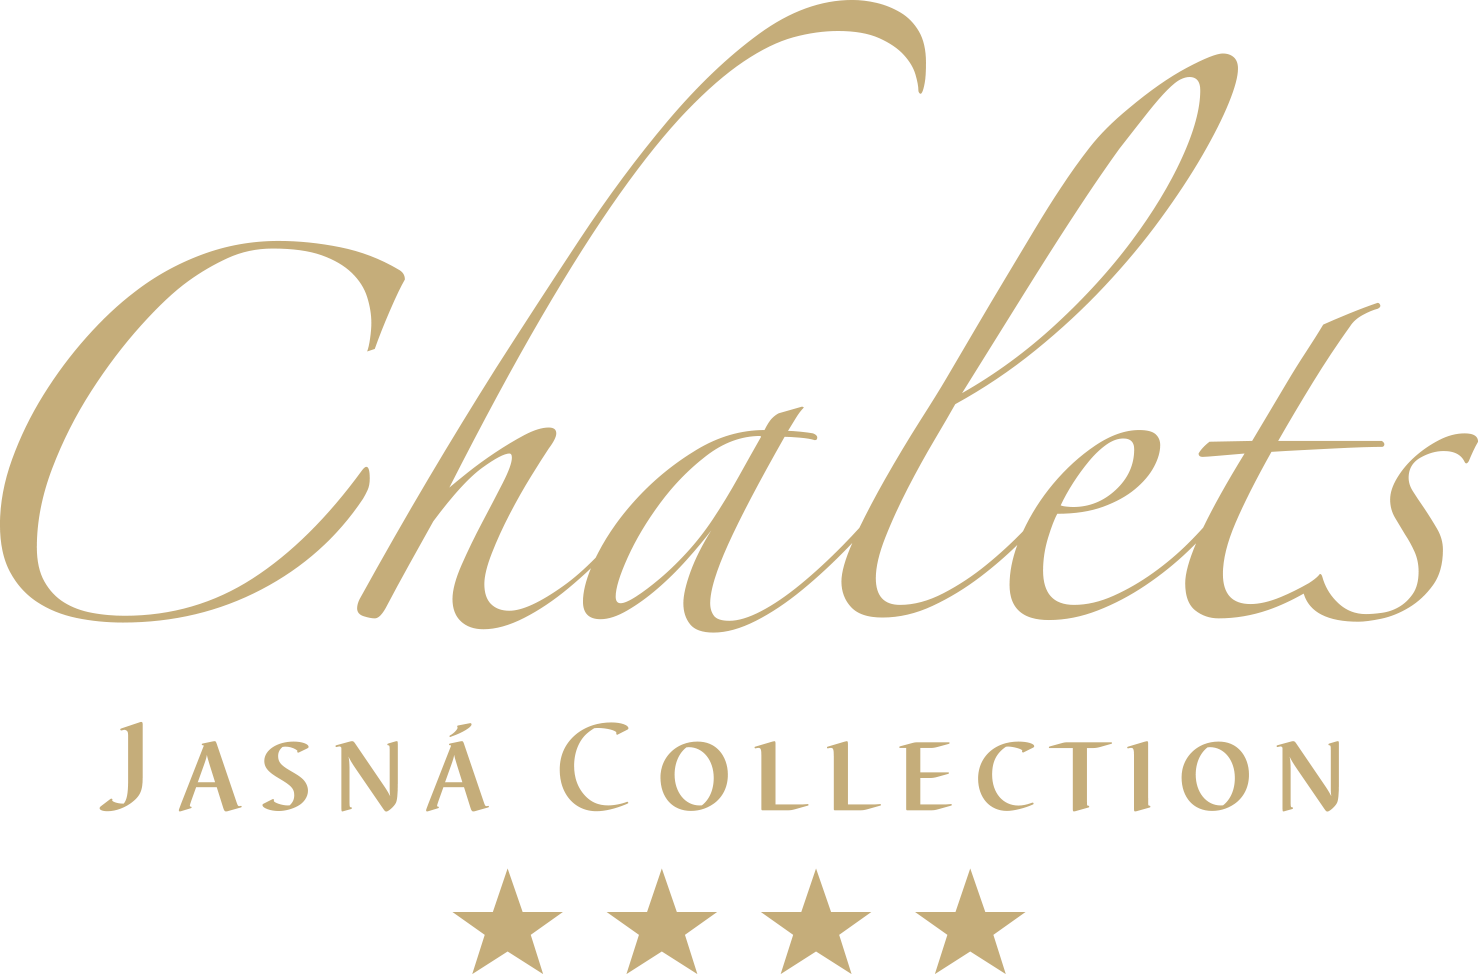 Chalets Jasná Collection - Chalets Jasná Collection